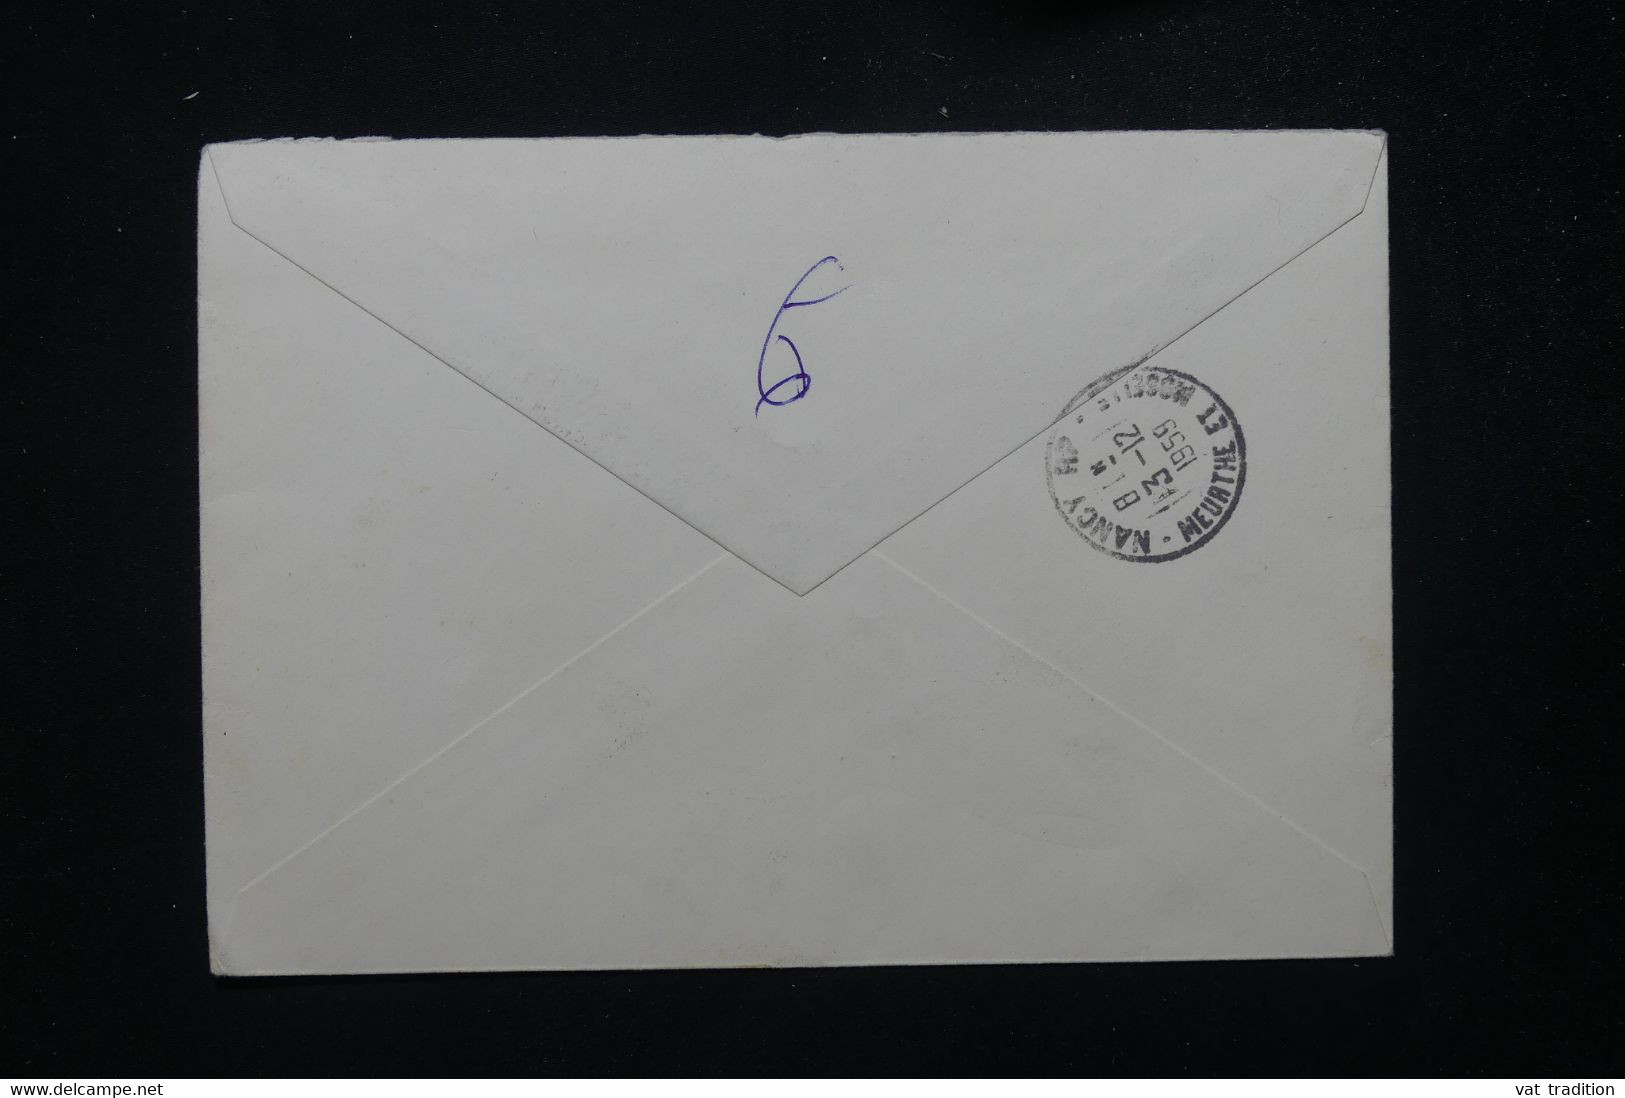 LIECHTENSTEIN - Enveloppe En Recommandé De Vaduz Pour La France En 1959 - L 81556 - Covers & Documents